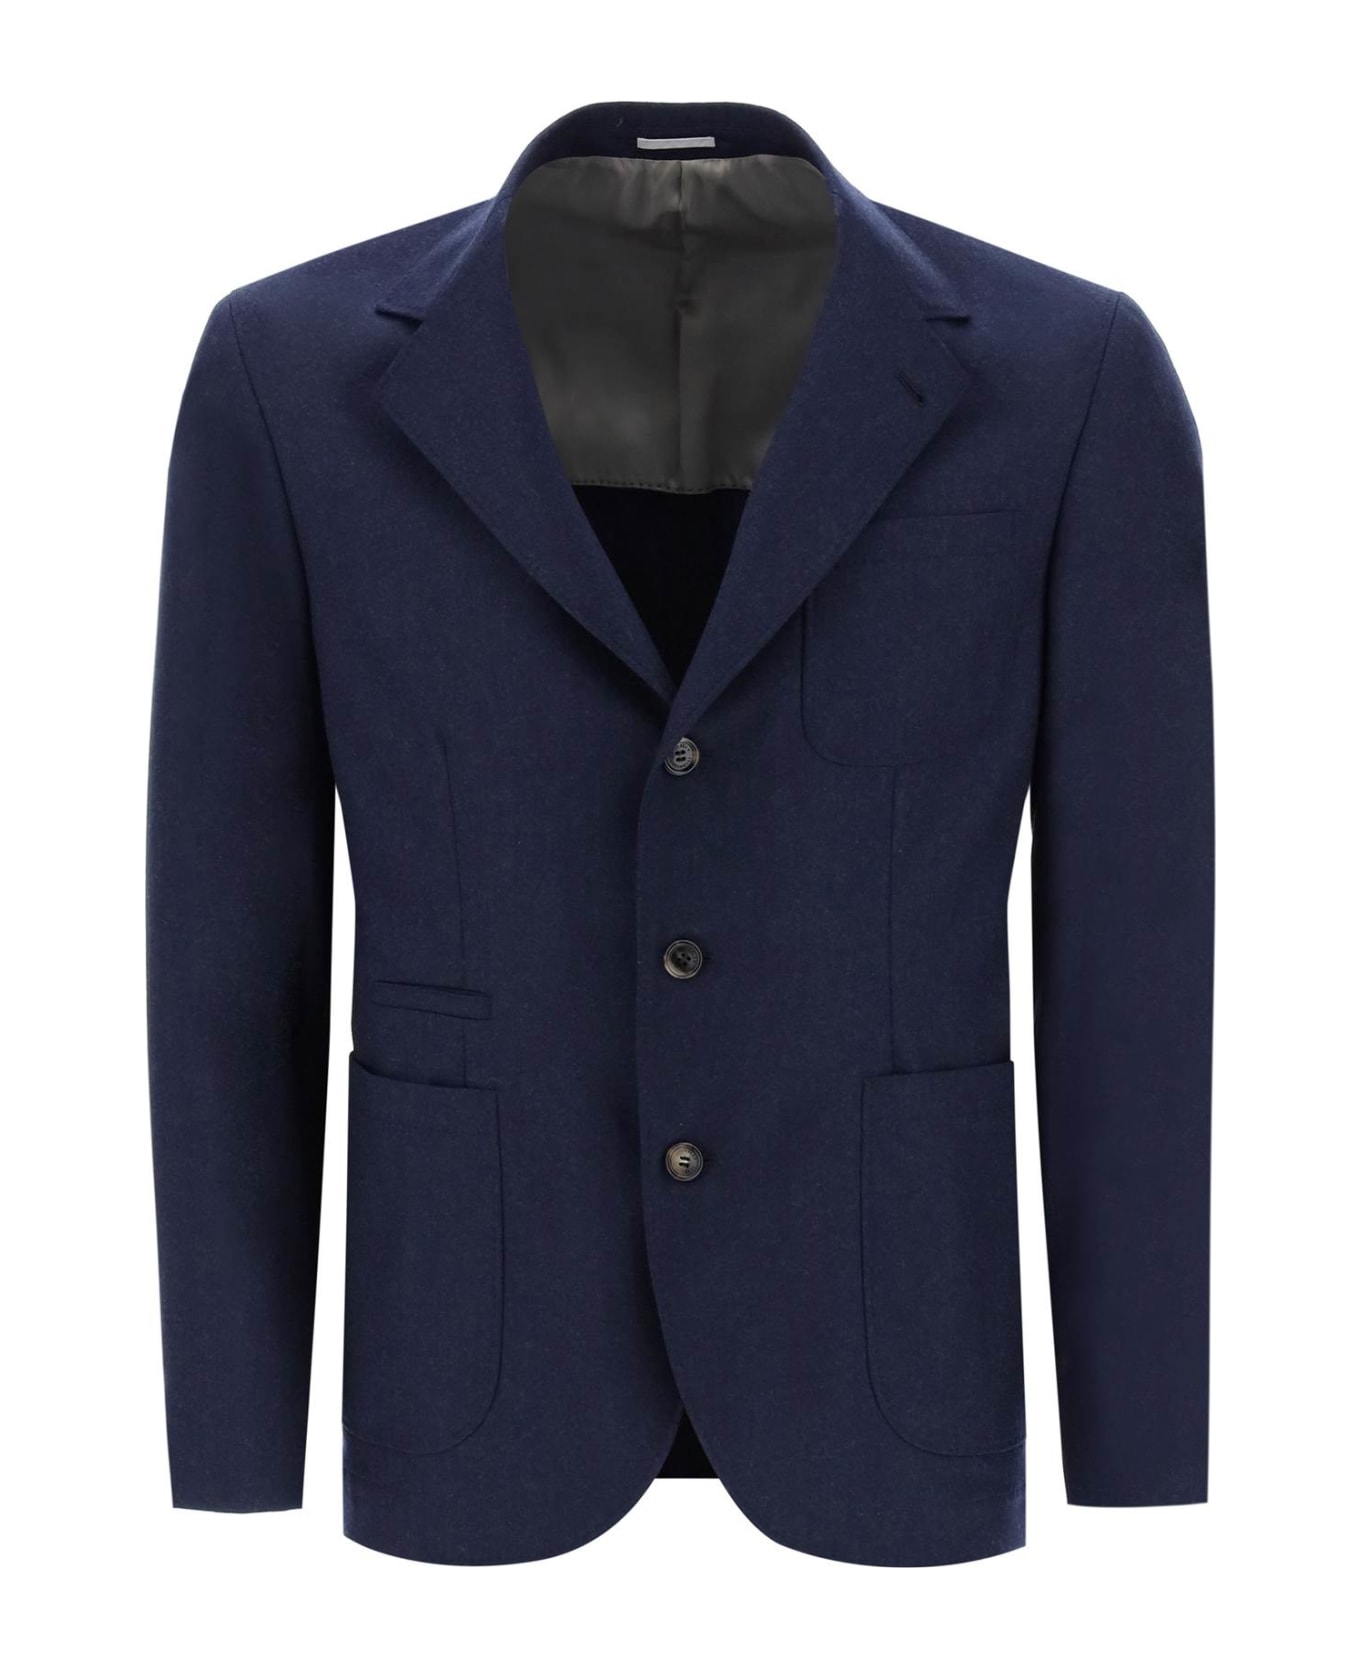 Brunello Cucinelli Single Breast Blazer Jacket - Marine Blue